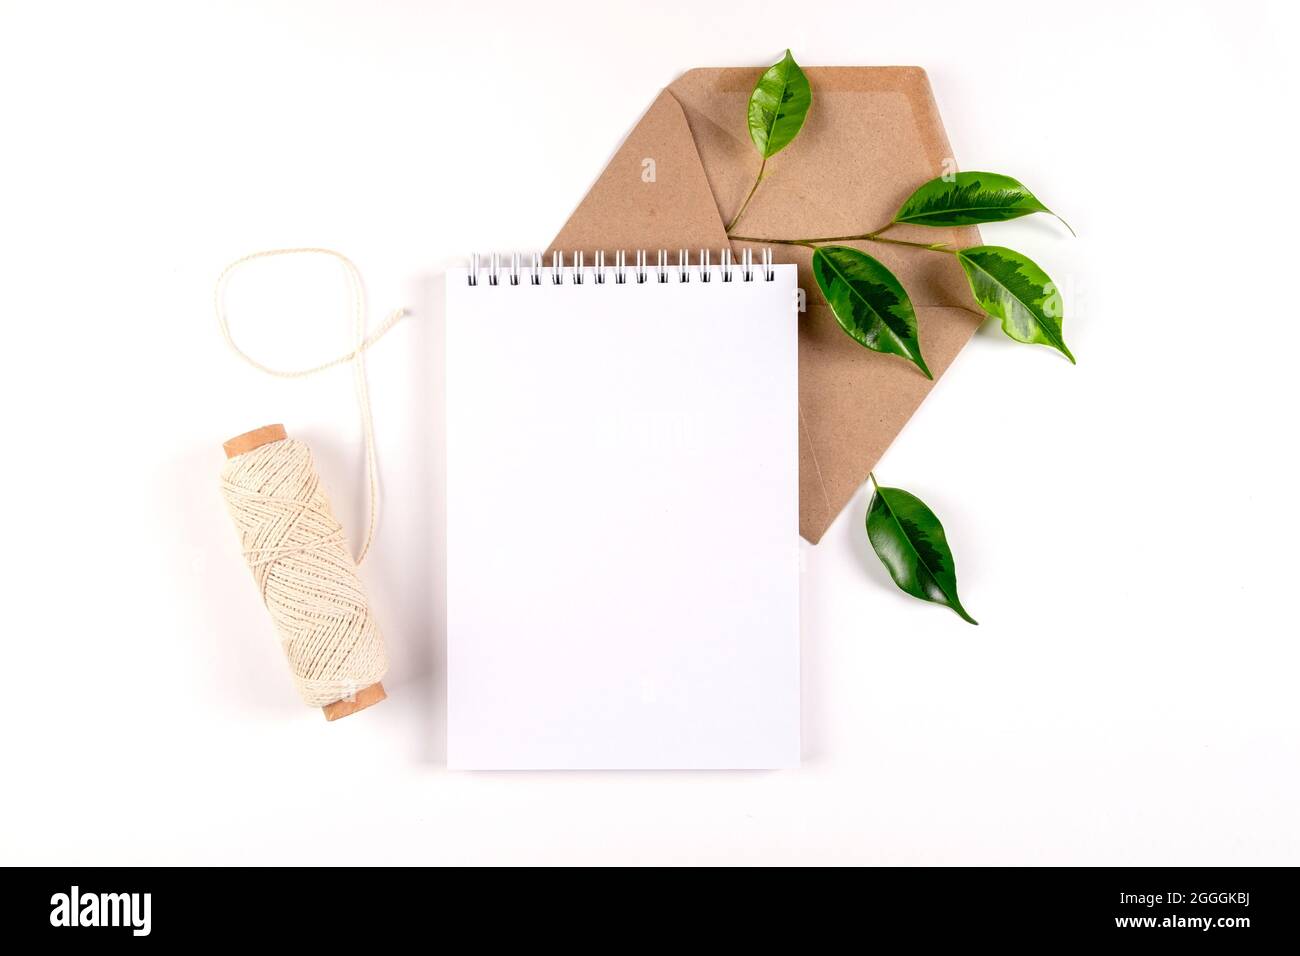 Notizbuch, Umschlag aus recyceltem Papier und Spule aus einfachem grobem Faden liegen auf weißer Oberfläche mit einem Zweig grüner Pflanze. Ökologie-Konzept, recyclebar, nein war Stockfoto